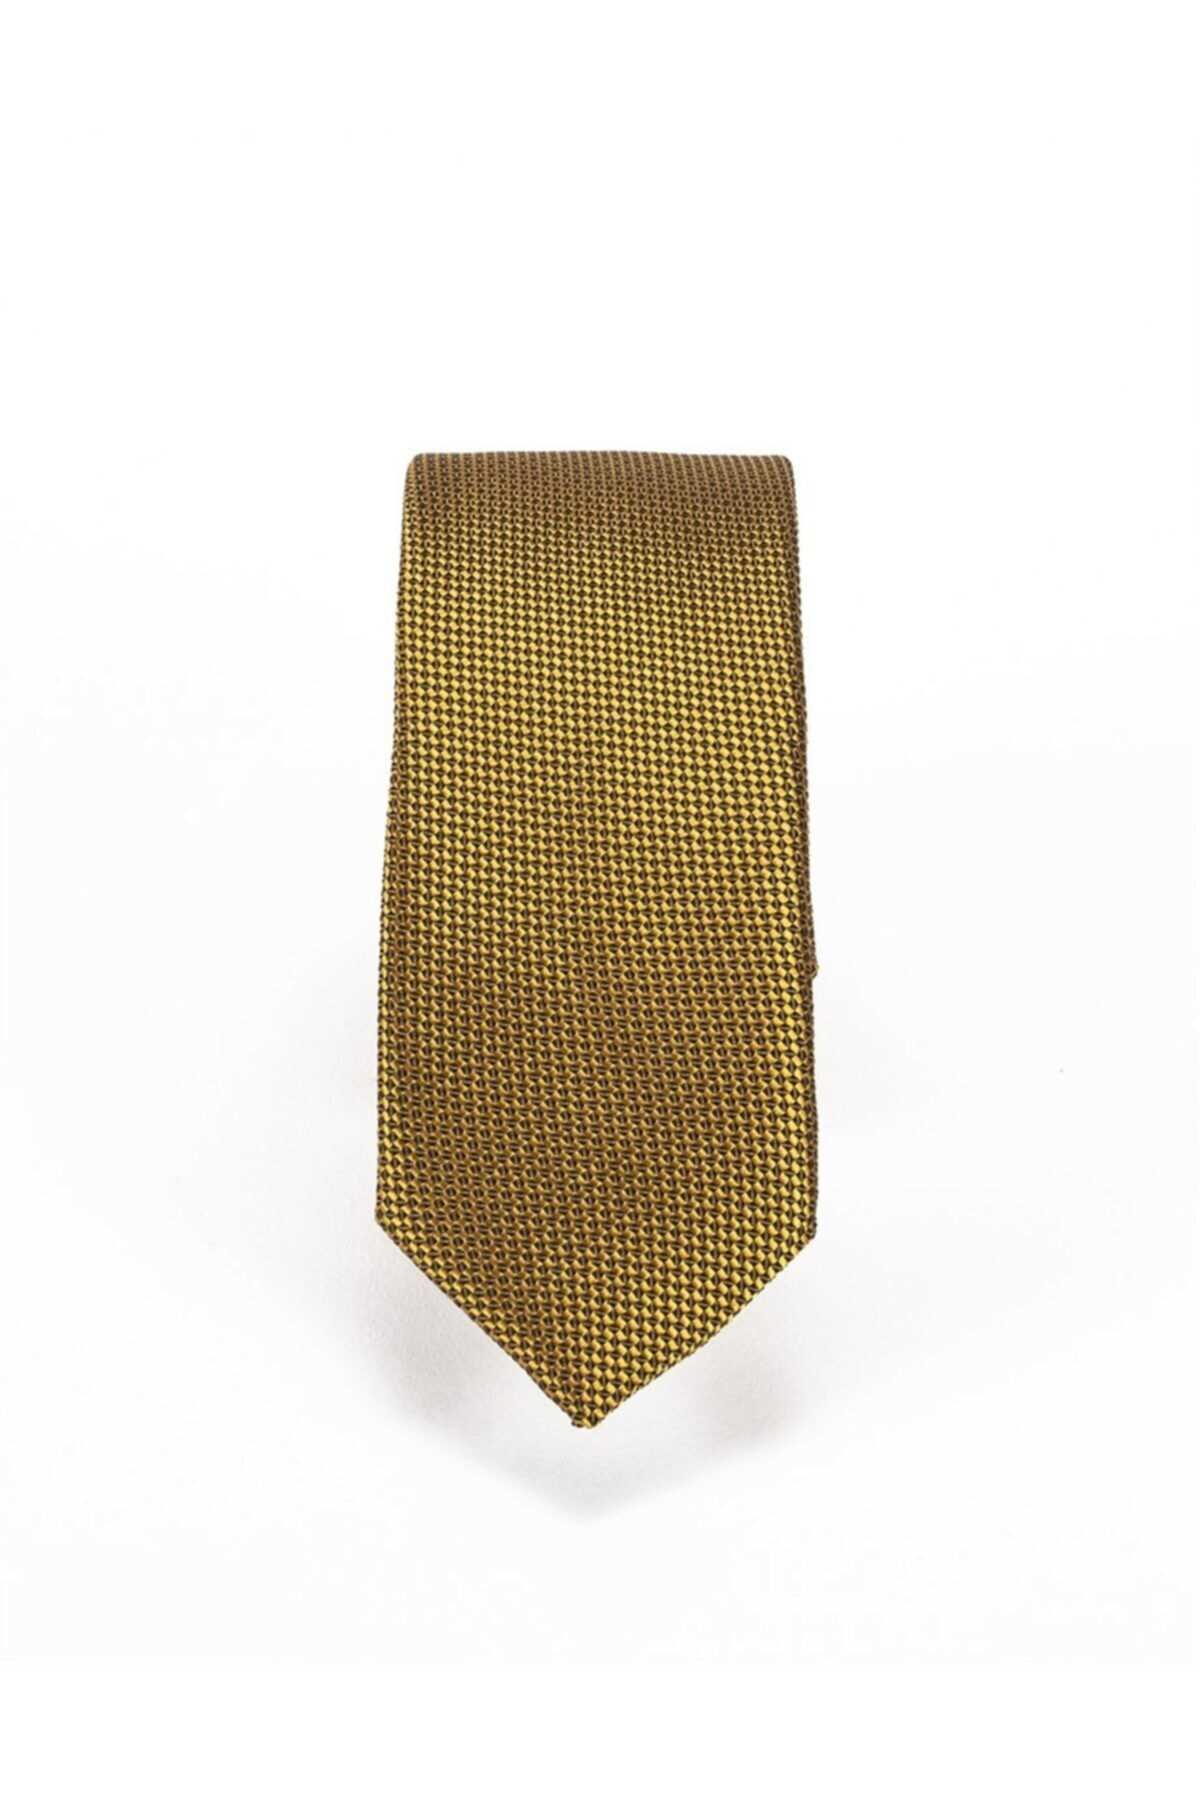 سفارش کراوات مردانه ارزان برند Yage رنگ طلایی ty89895919